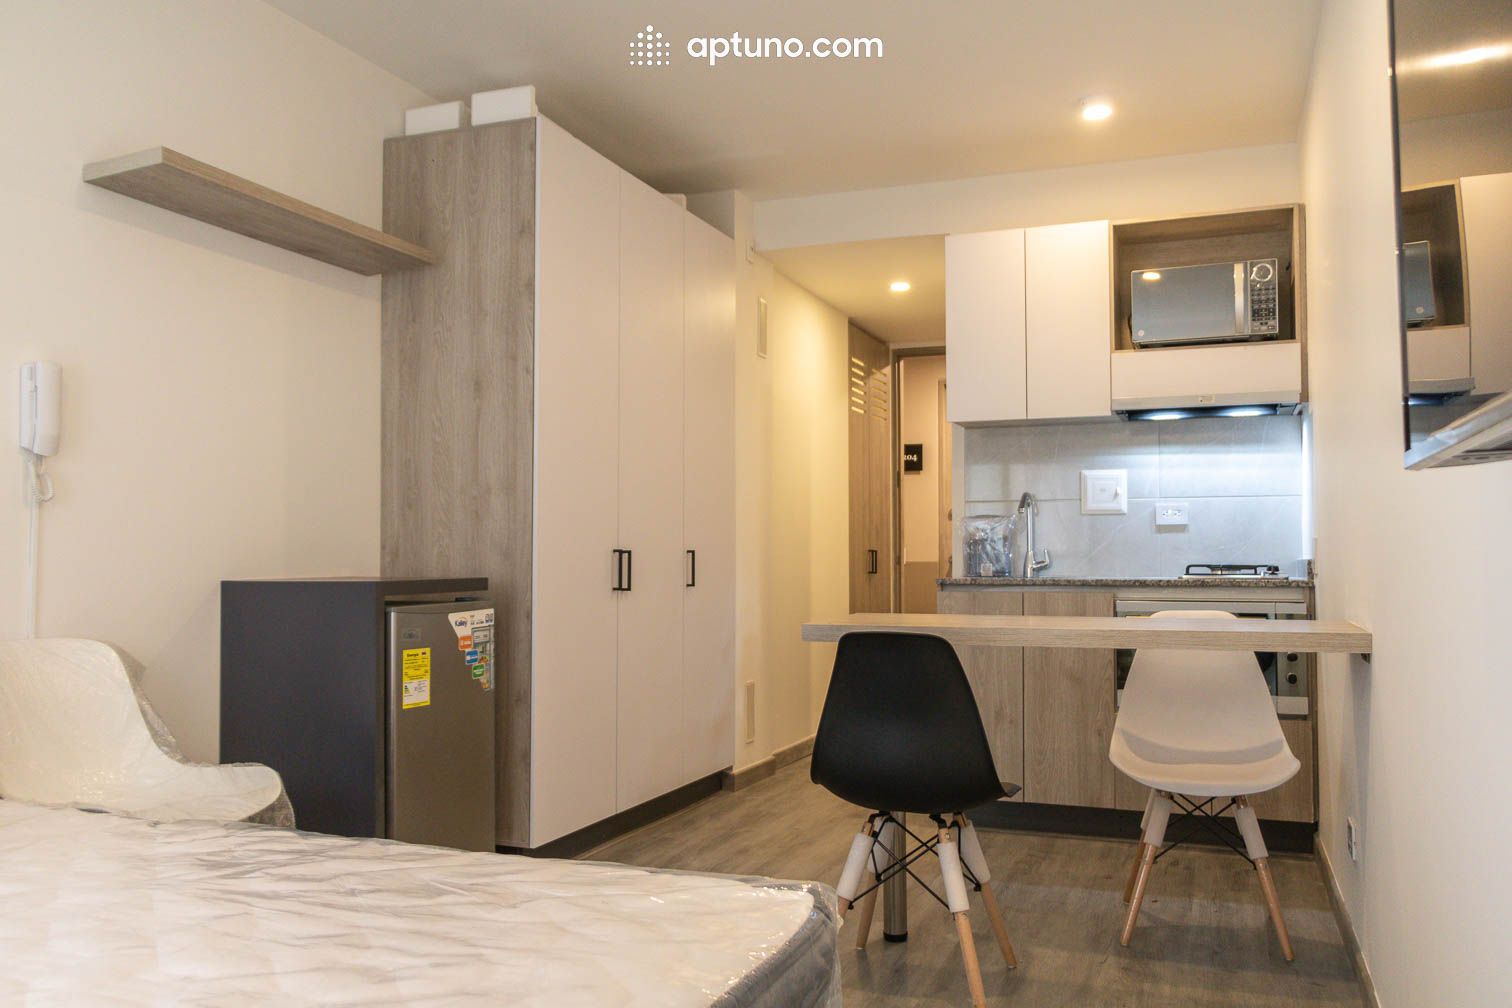 Apartamento en arriendo Chapinero Central 25 m² - $ 1.600.000,00